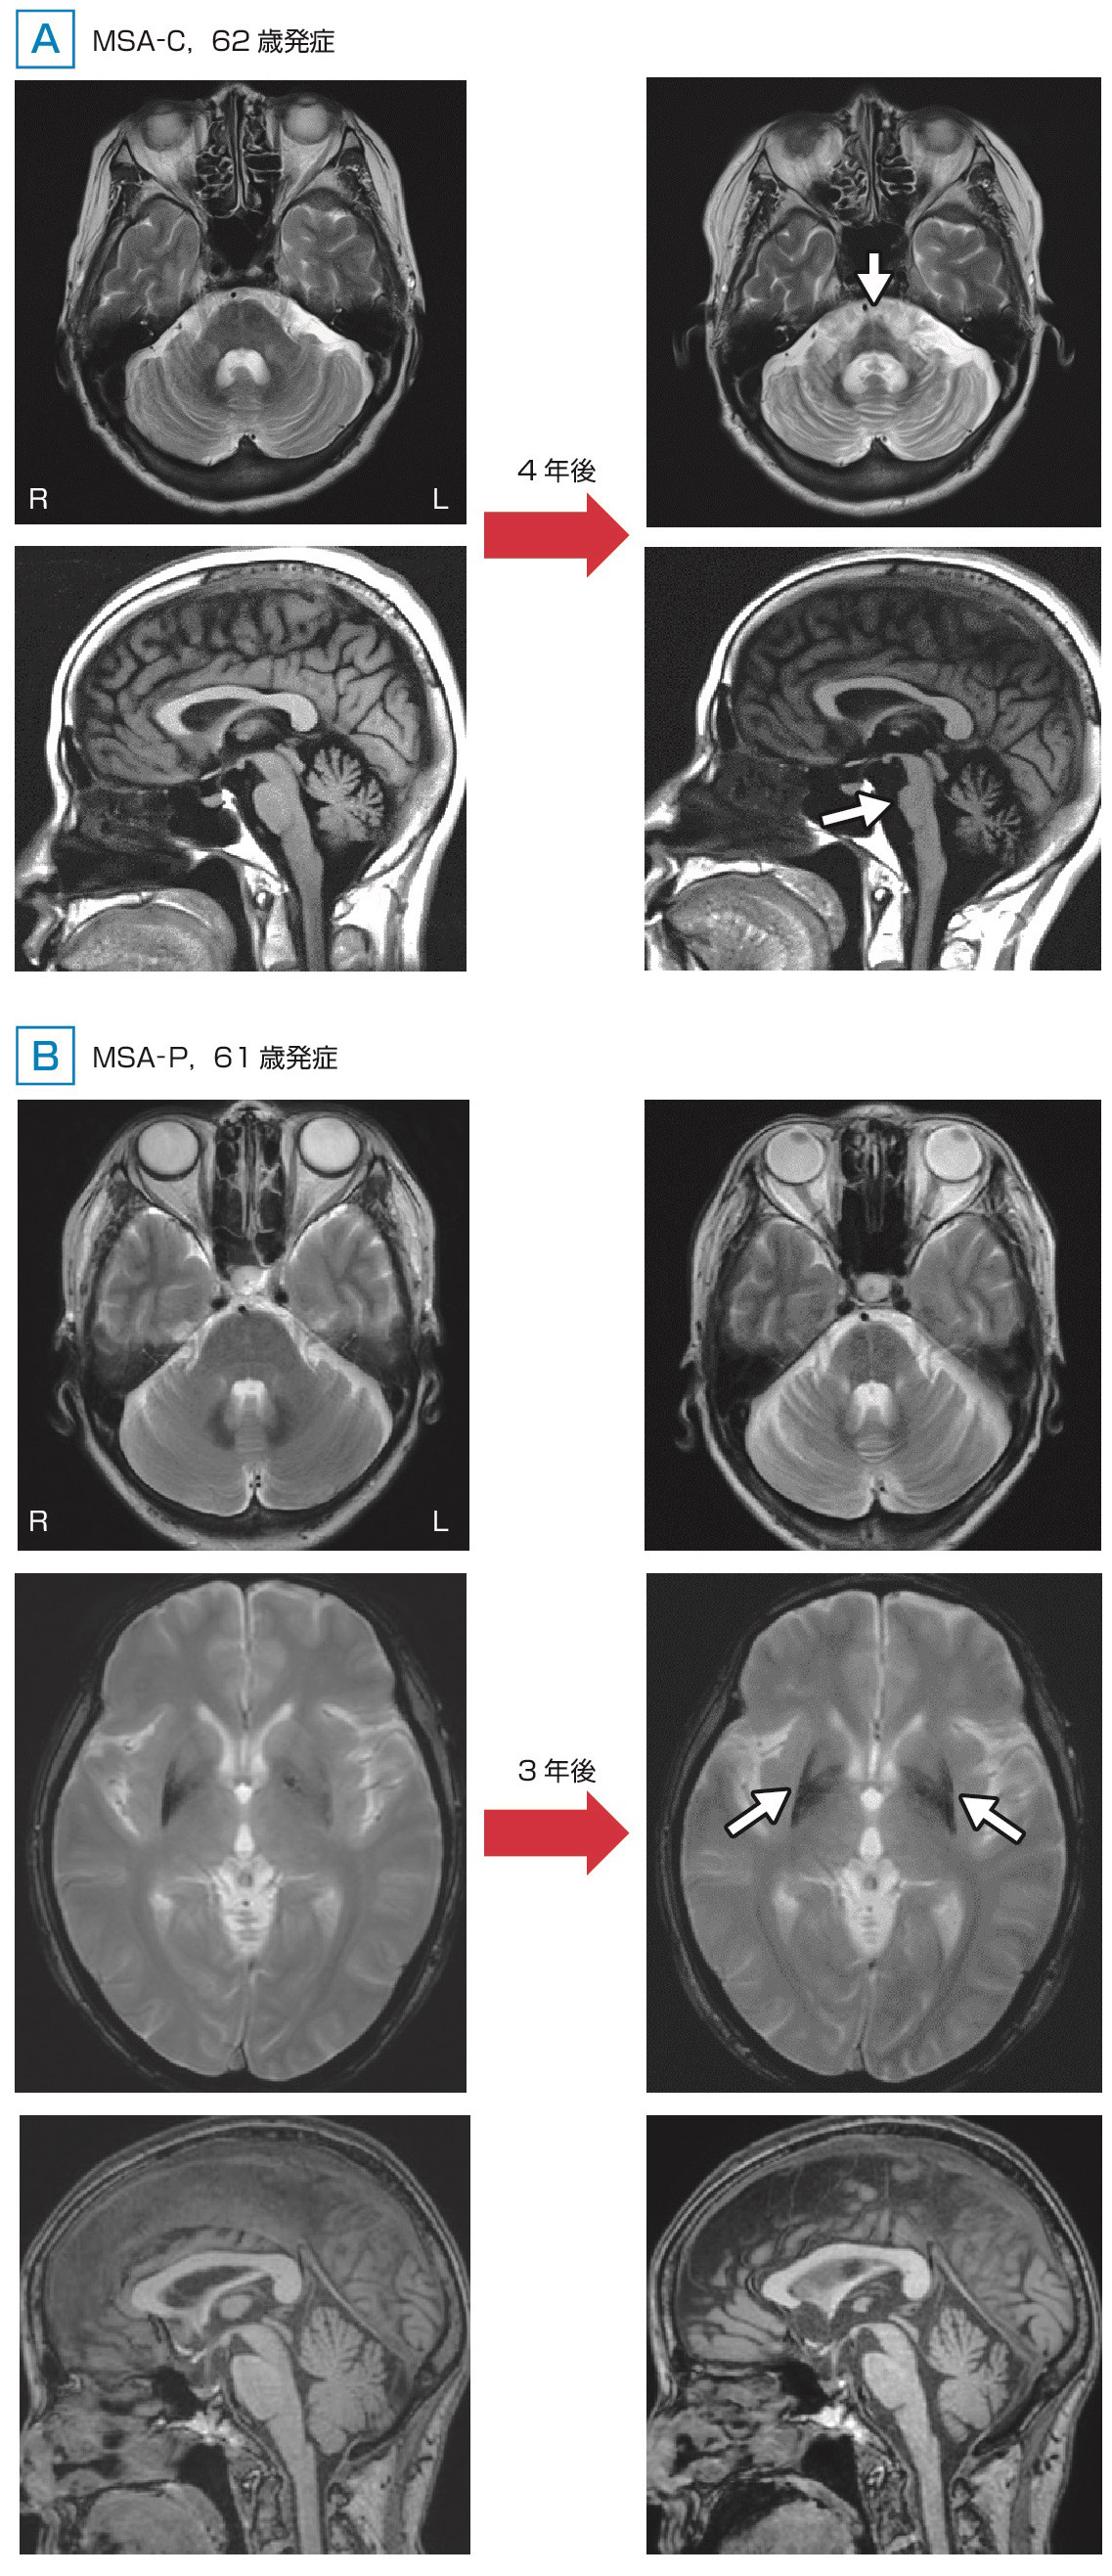 ⓔ図18-6-8　多系統萎縮症 (MSA–CおよびMSA–P) における頭部MRIの特徴 診断時に小脳性運動失調が前景に立った多系統萎縮症 (MSA–C) とParkinson症状が前景に立った多系統萎縮症 (MSA–P) の頭部MRI画像を示す．AのMSA–C患者 (62歳発症) では明らかな橋萎縮および小脳萎縮の進行を認める．4年経過後のT2強調画像水平断では中小脳脚の萎縮と中小脳脚の高信号域 (MCPサイン) および橋底部における十字徴候 (hot cross bunサイン，白矢印) を認める．T1強調画像矢状断では，橋底部の萎縮 (白矢印) は特に下方に強く認める．BのMSA–P患者 (61歳発症) ではT2＊強調画像水平断で右側優位の被殻背外側から外縁の低信号域を認め，3年経過後に明らかに進行し，左側の低信号域化も目立っている (白矢印)．また，橋萎縮および小脳萎縮も軽度に進行している．臨床的には左上下肢優位のParkinson症状で発症し，その後右上下肢にも進展した．